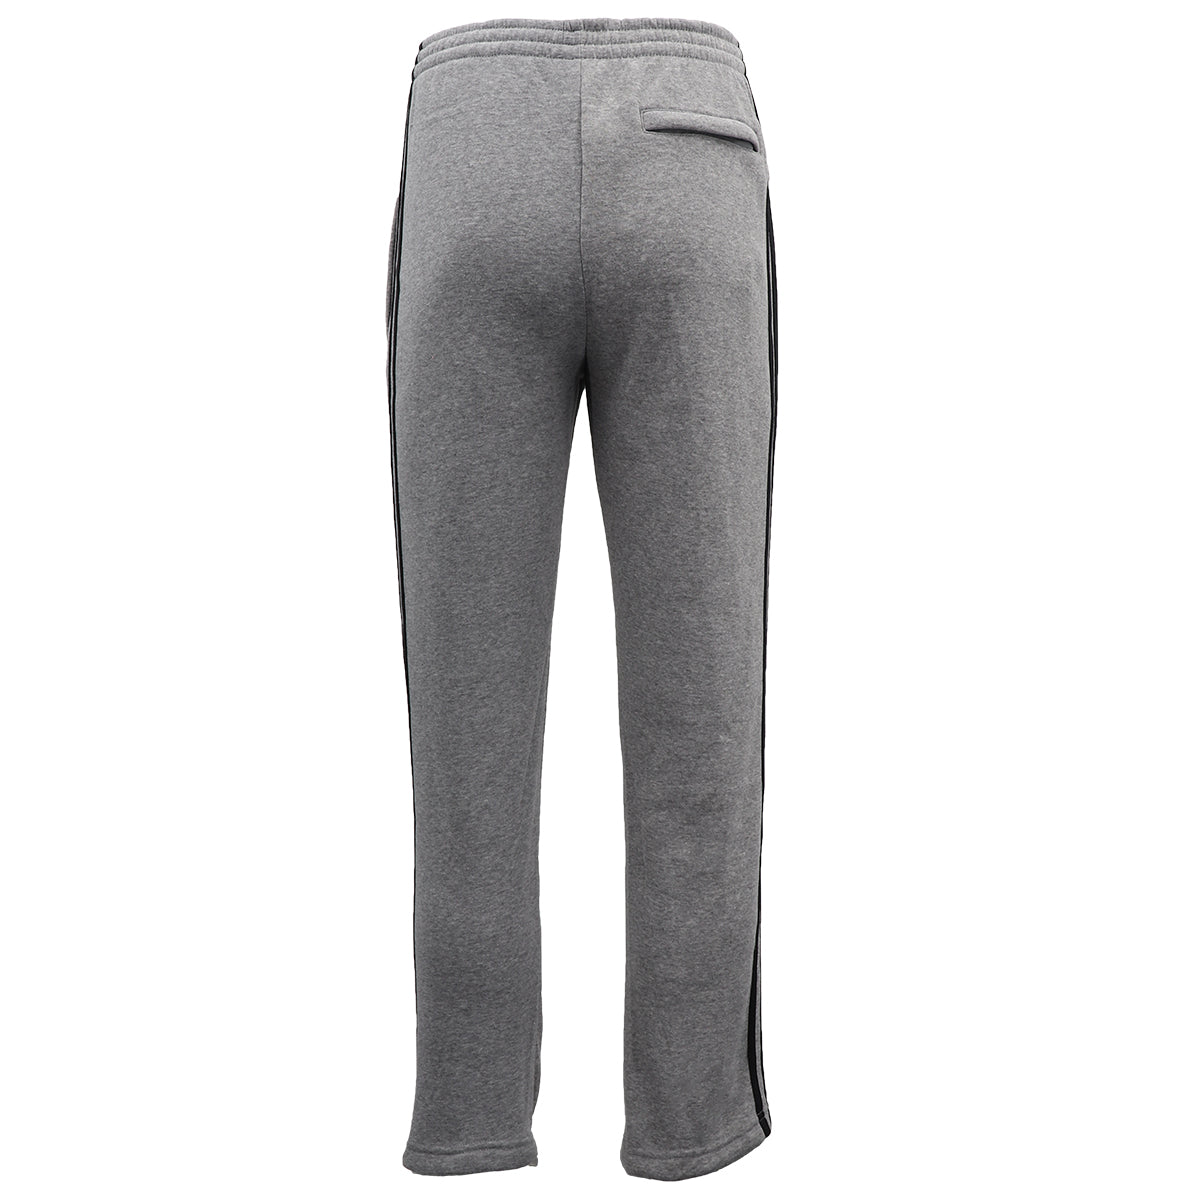 Men's Fleece Casual Sports Track Pants w Zip Pocket Striped Sweat Trousers S-6XL, Black, S